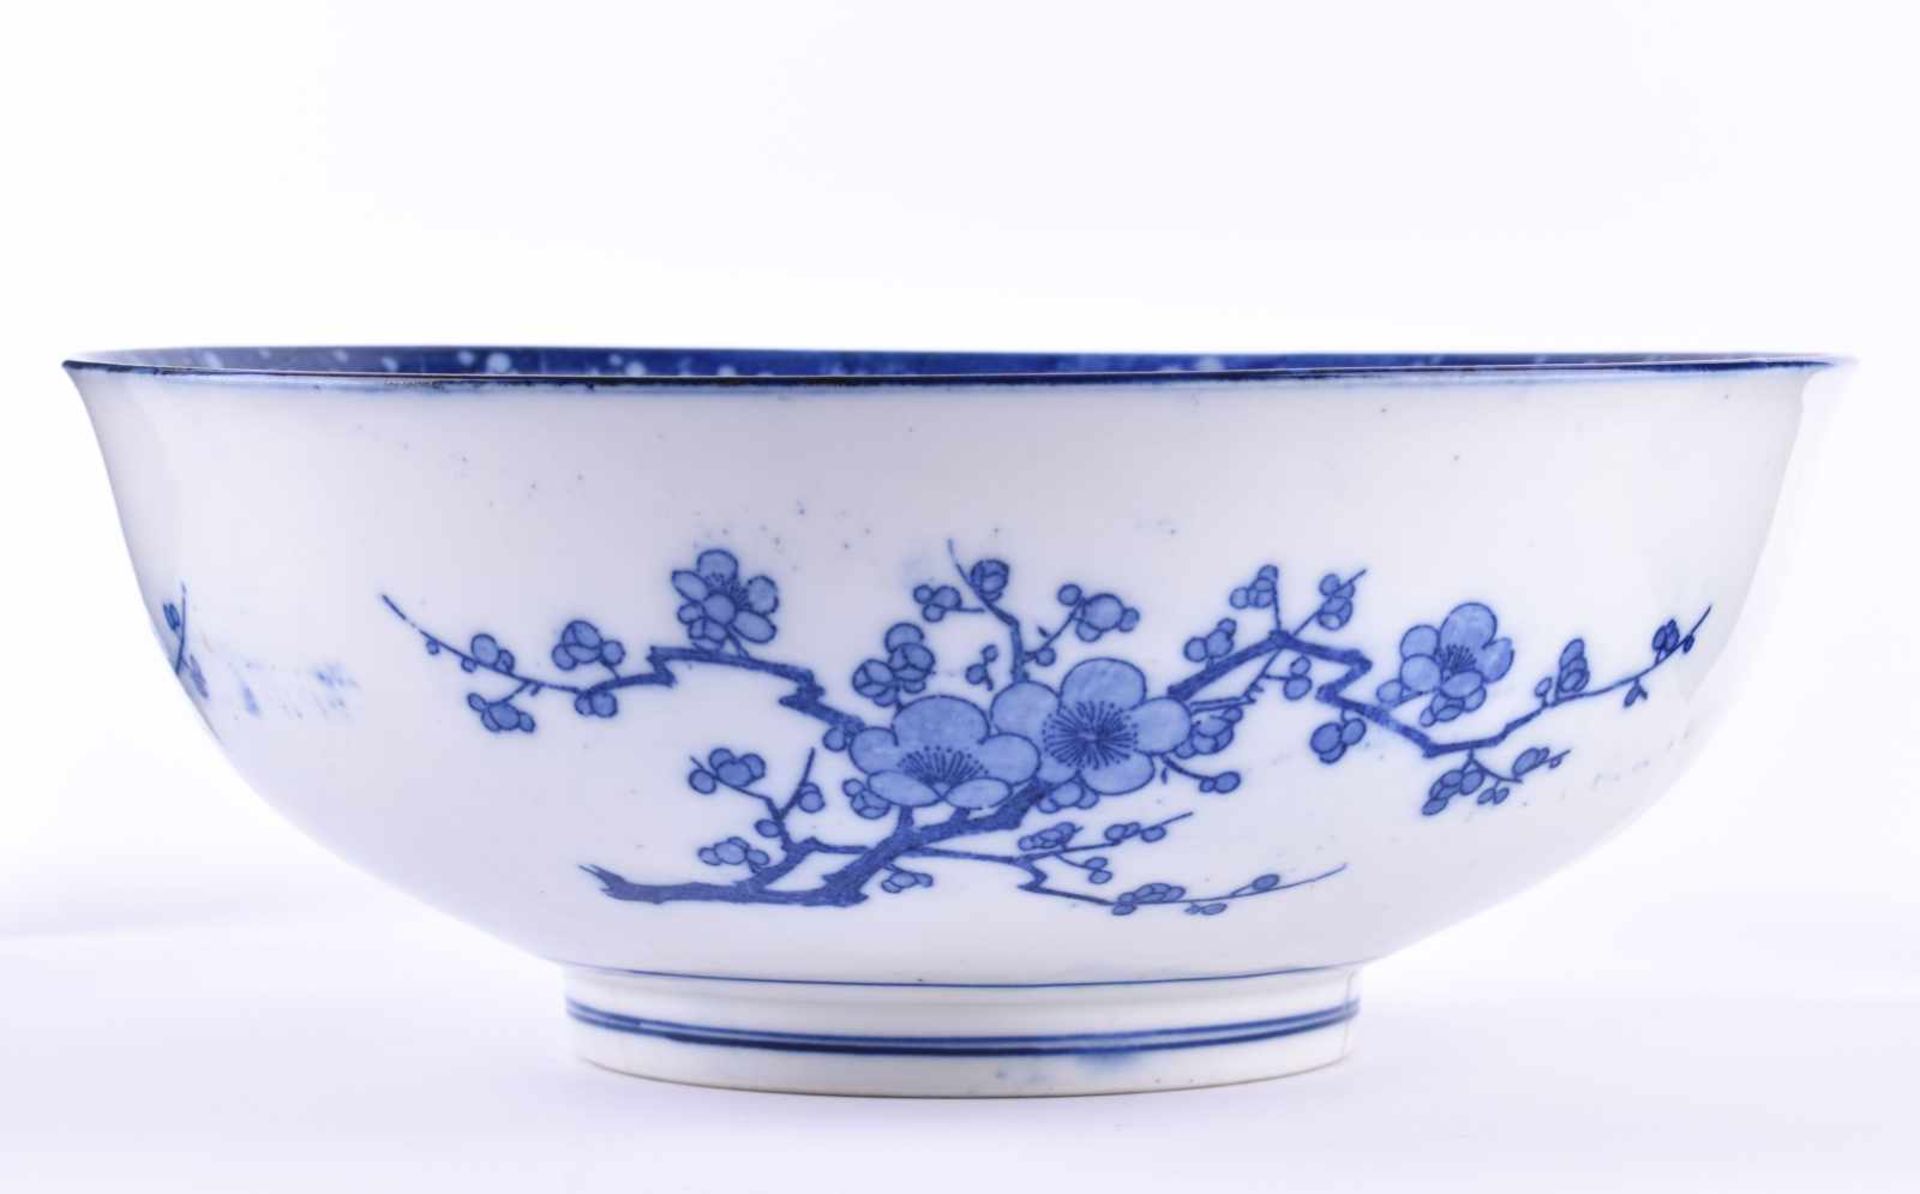 Schale China Qing Dynastiemit blau-weiß Malerei verziert, unterhalb sichtbare Haarrisse, blaue 6 - Bild 2 aus 5